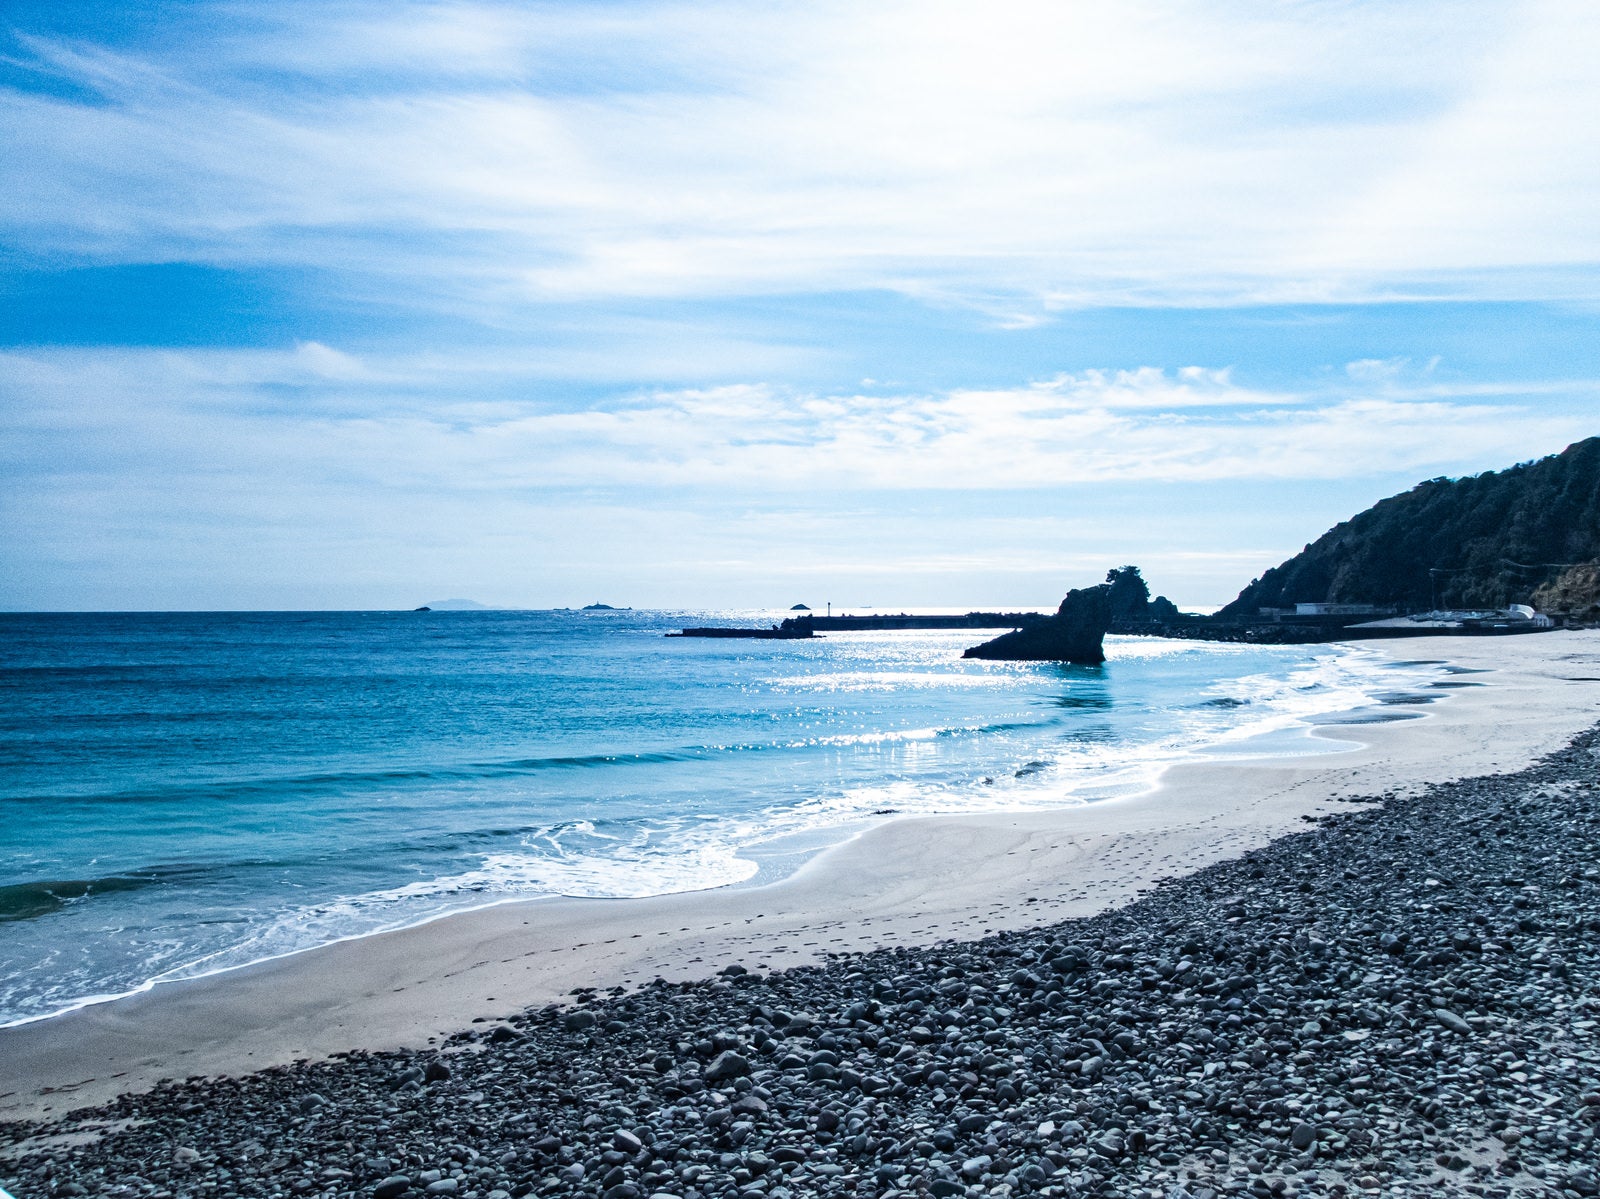 「波打ち際の砂浜と小石の浜」の写真